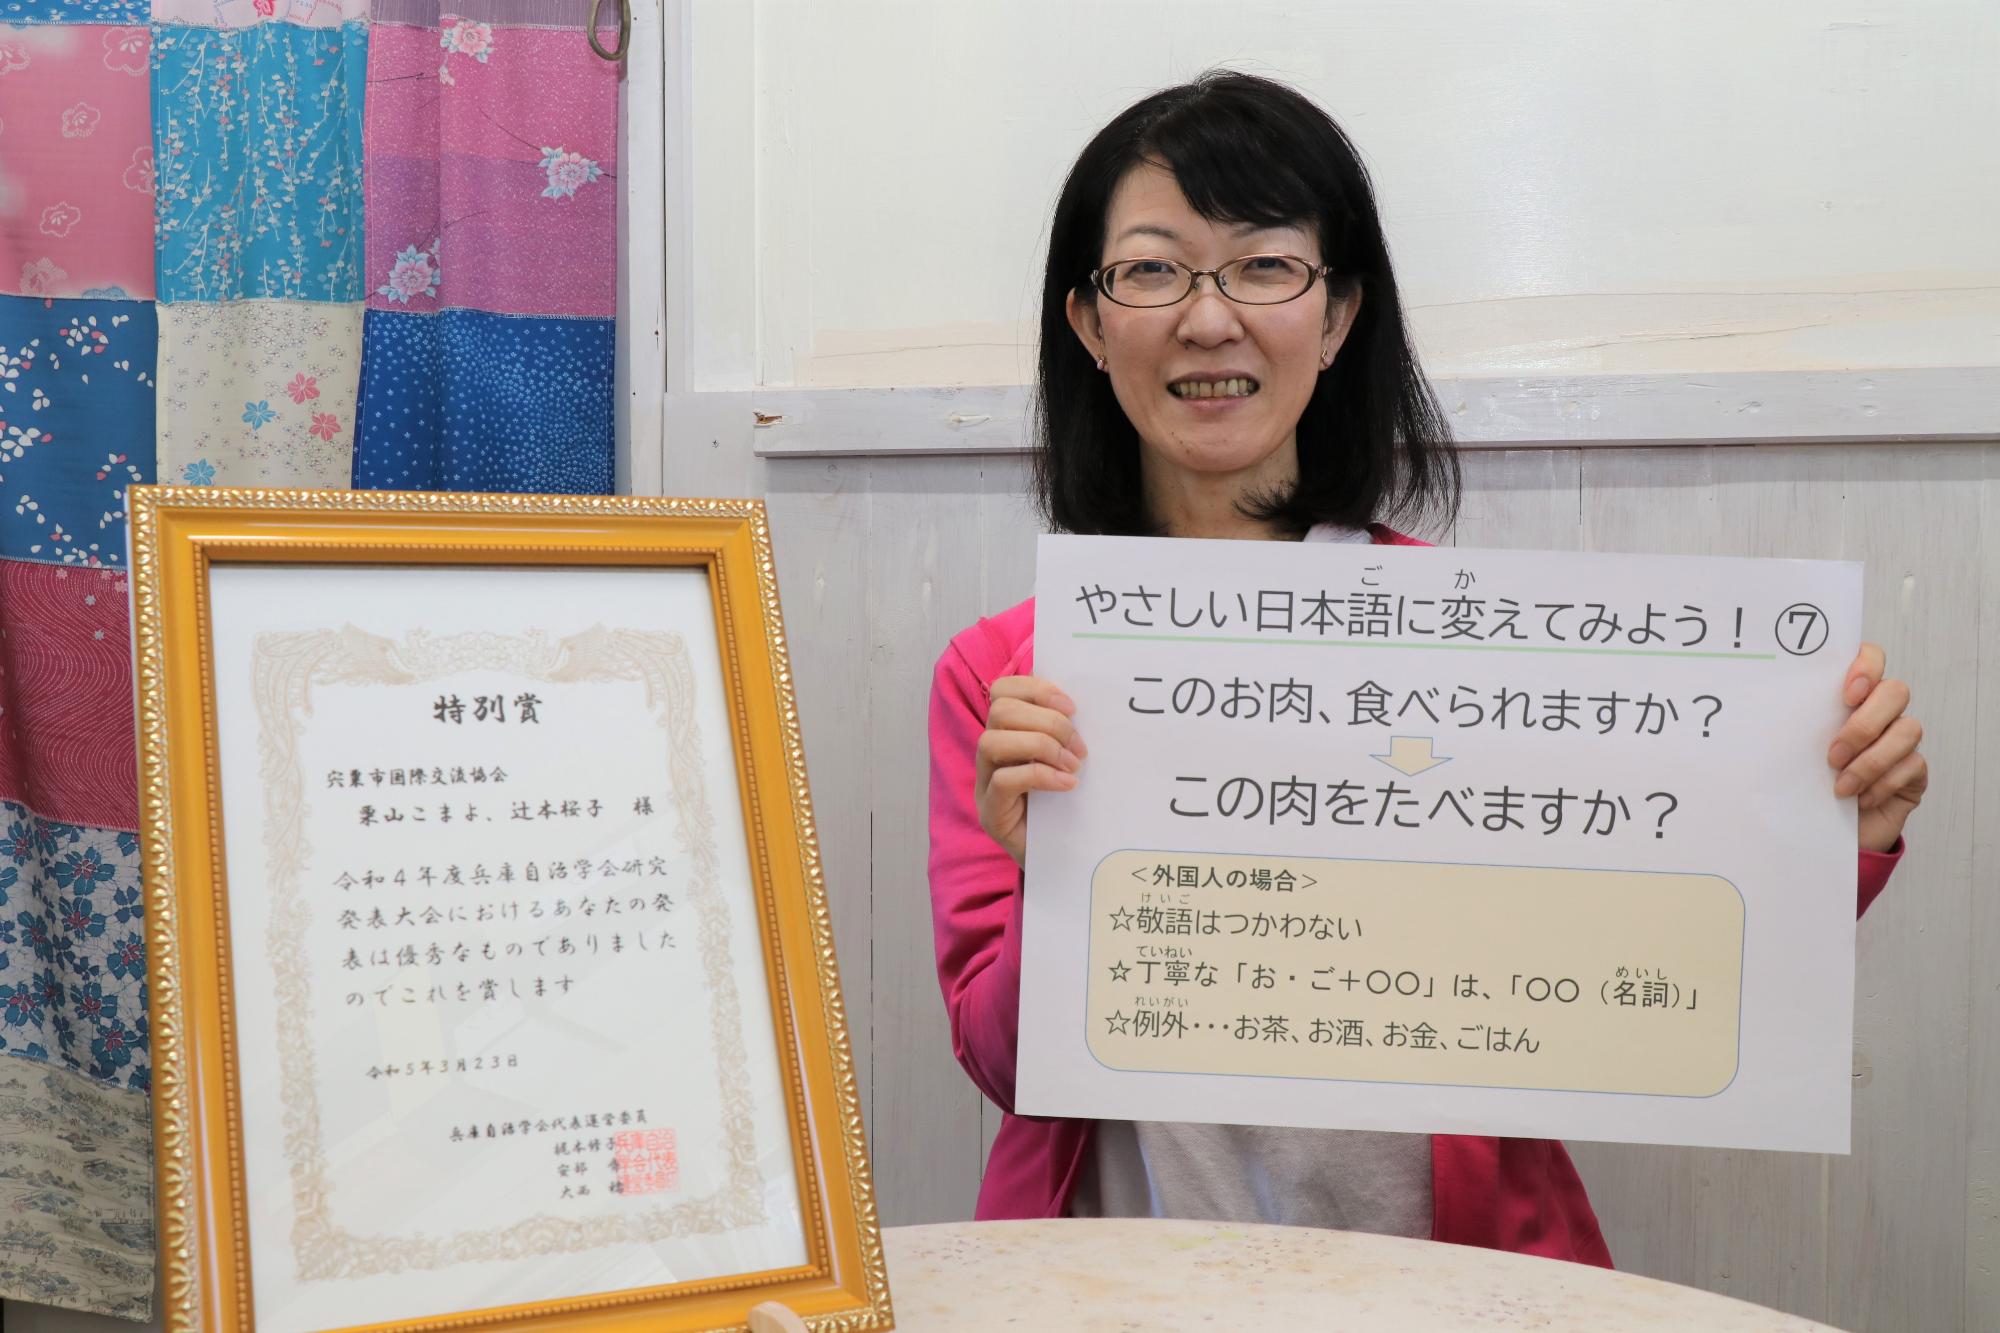 栗山こまよさんが「やさしい日本語」に関する問題が書かれた紙を手に持ち、机の上に立てられた兵庫自治学会特別賞の賞状と一緒に写っている写真